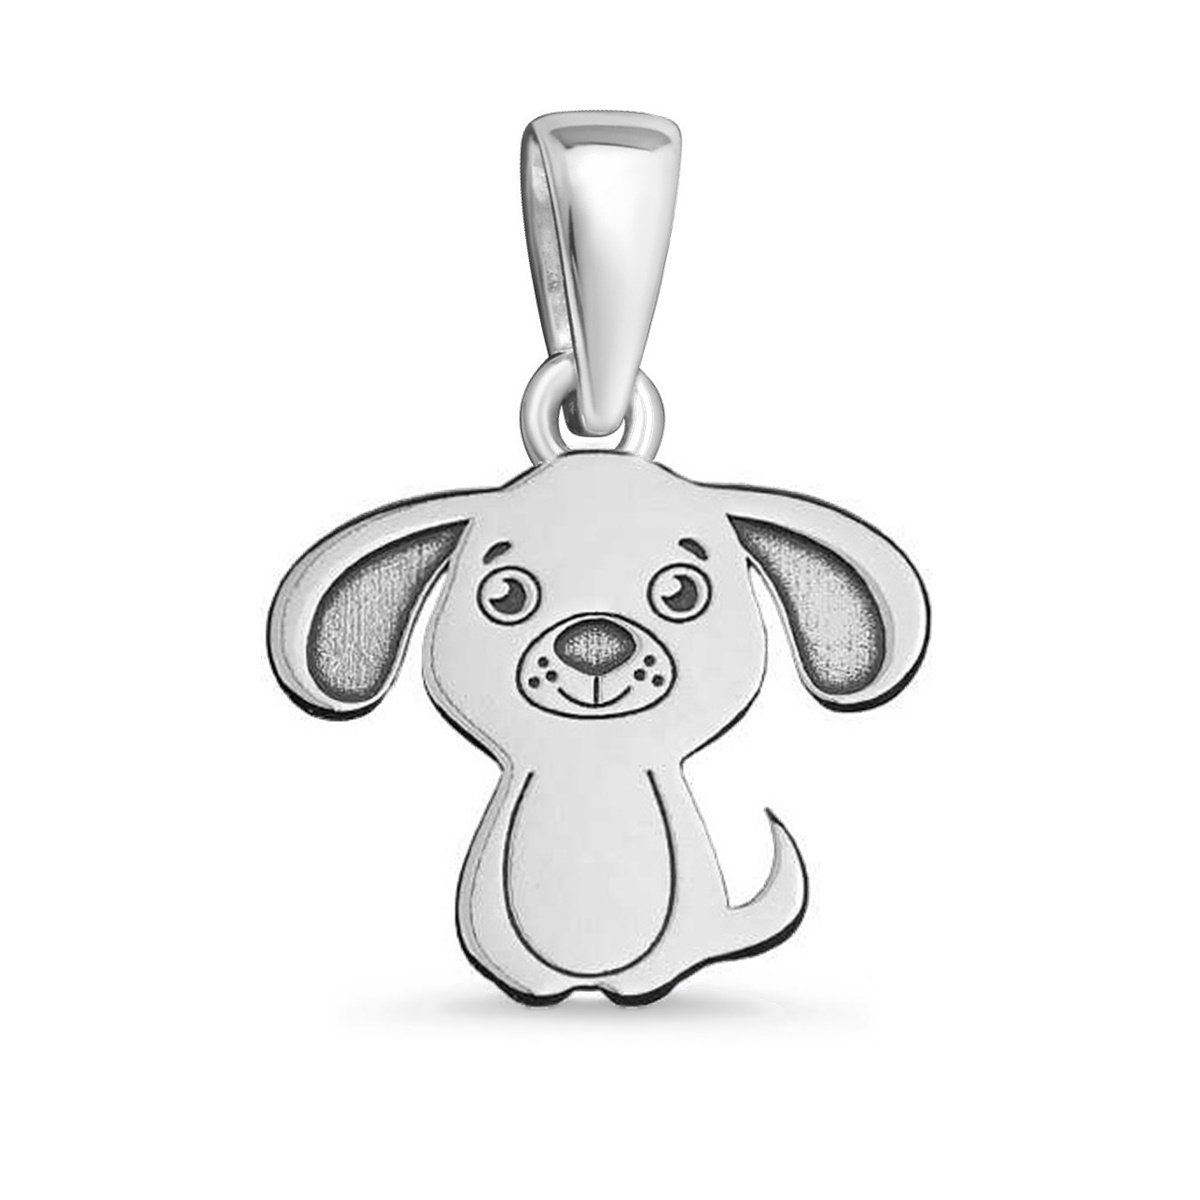 Goldene Hufeisen Kettenanhänger Hund Anhänger für Halskette aus 925  Sterling Silber Kettenanhänger (1 Stück, inkl. Etui)